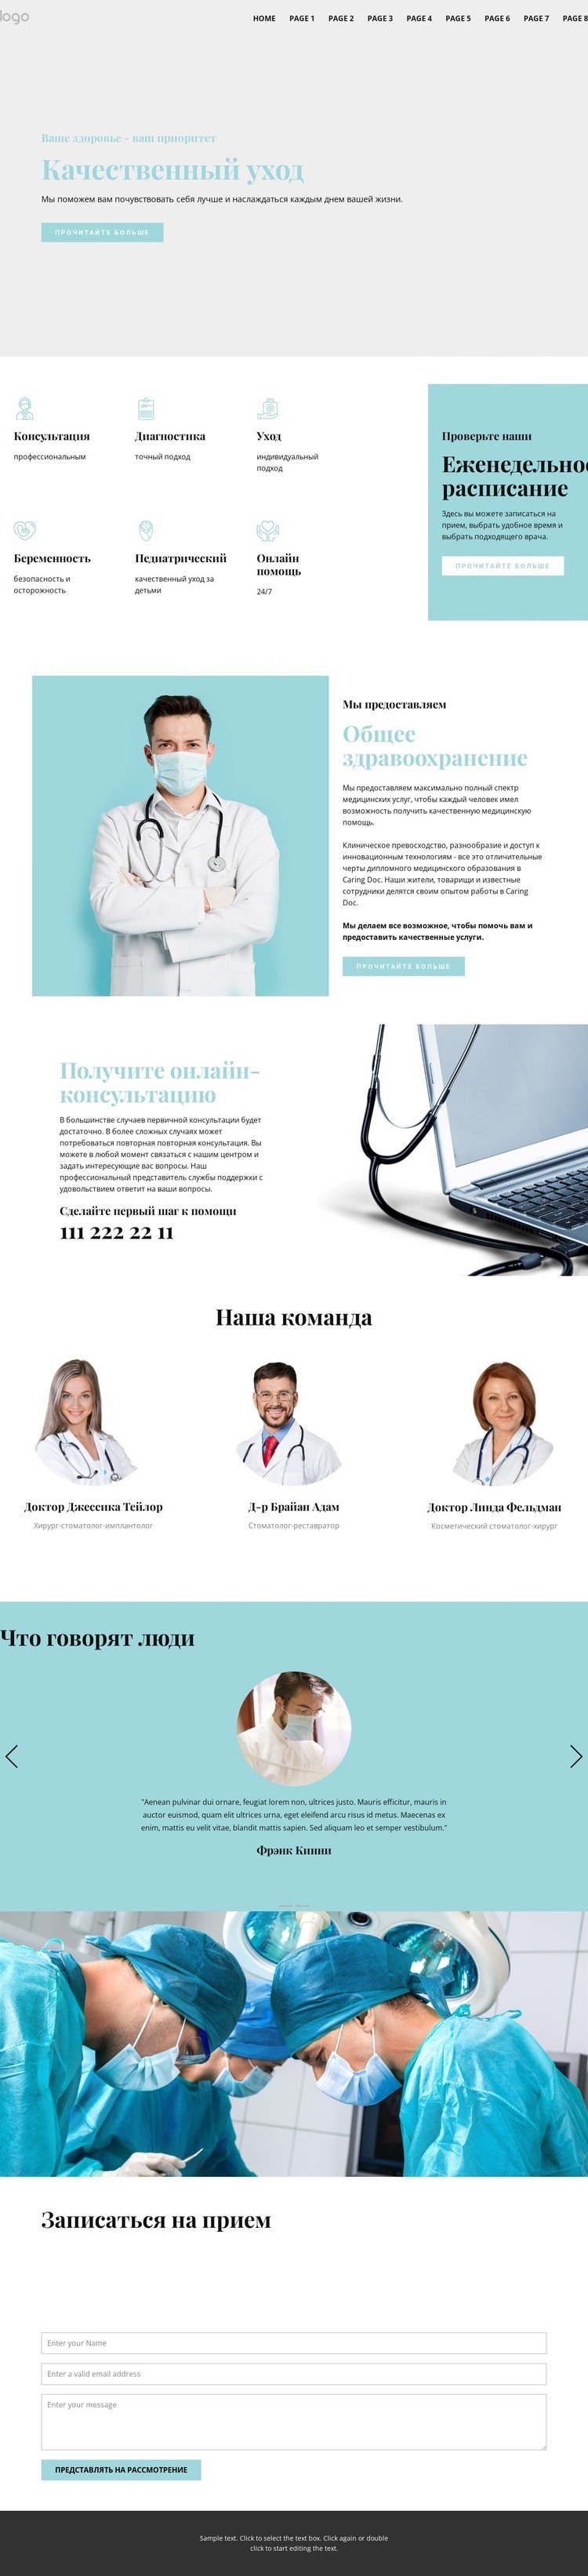 Качественная медицинская помощь Дизайн сайта